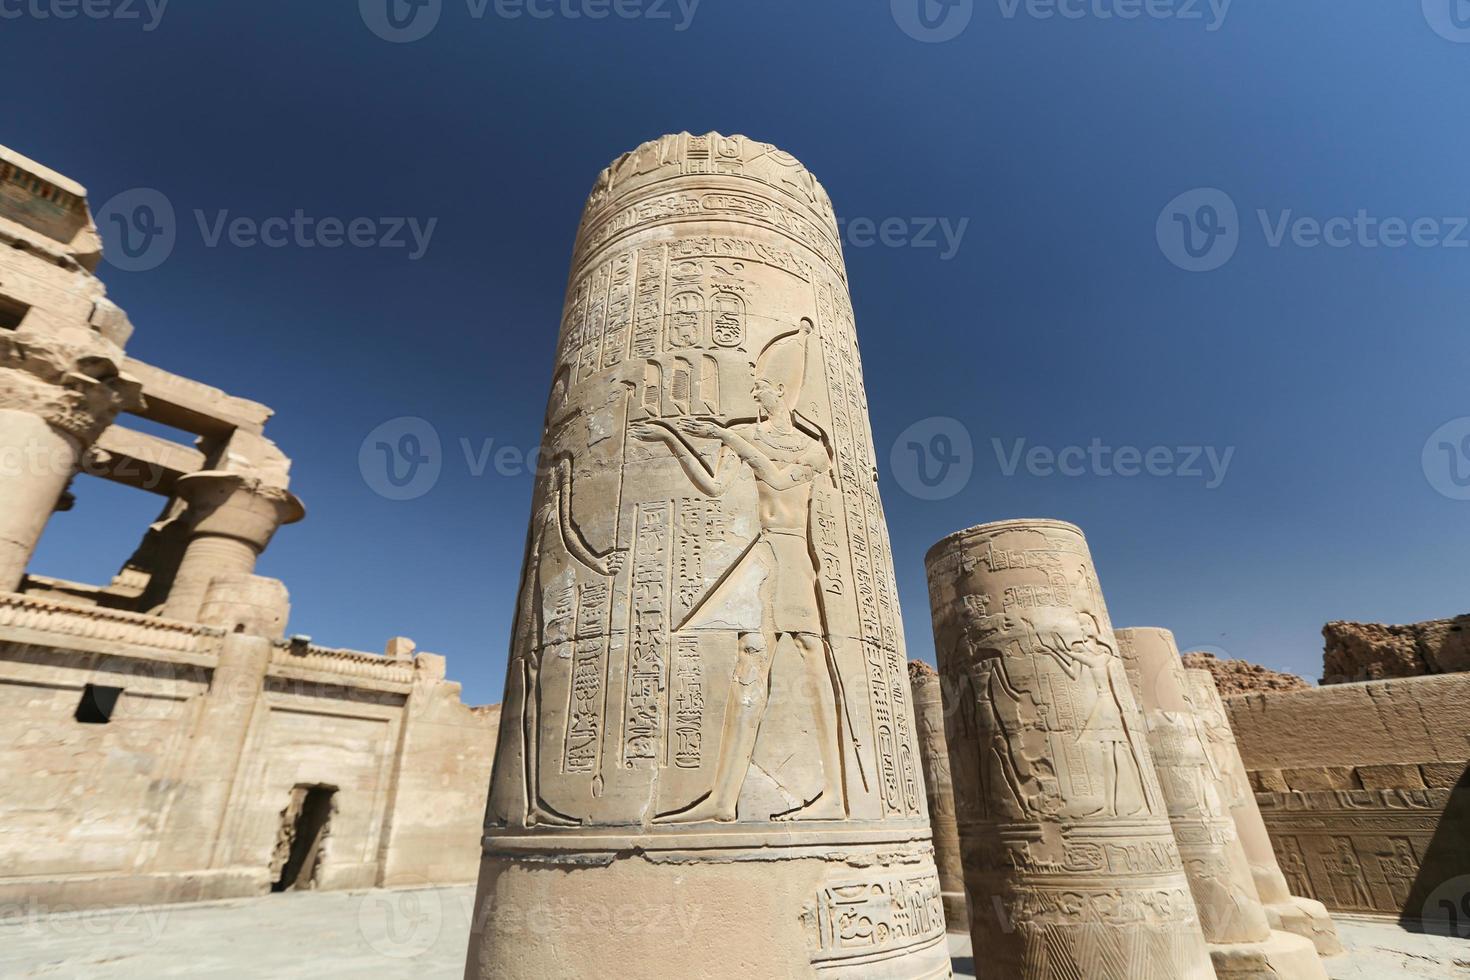 colonne dans le temple de kom ombo, assouan, egypte photo